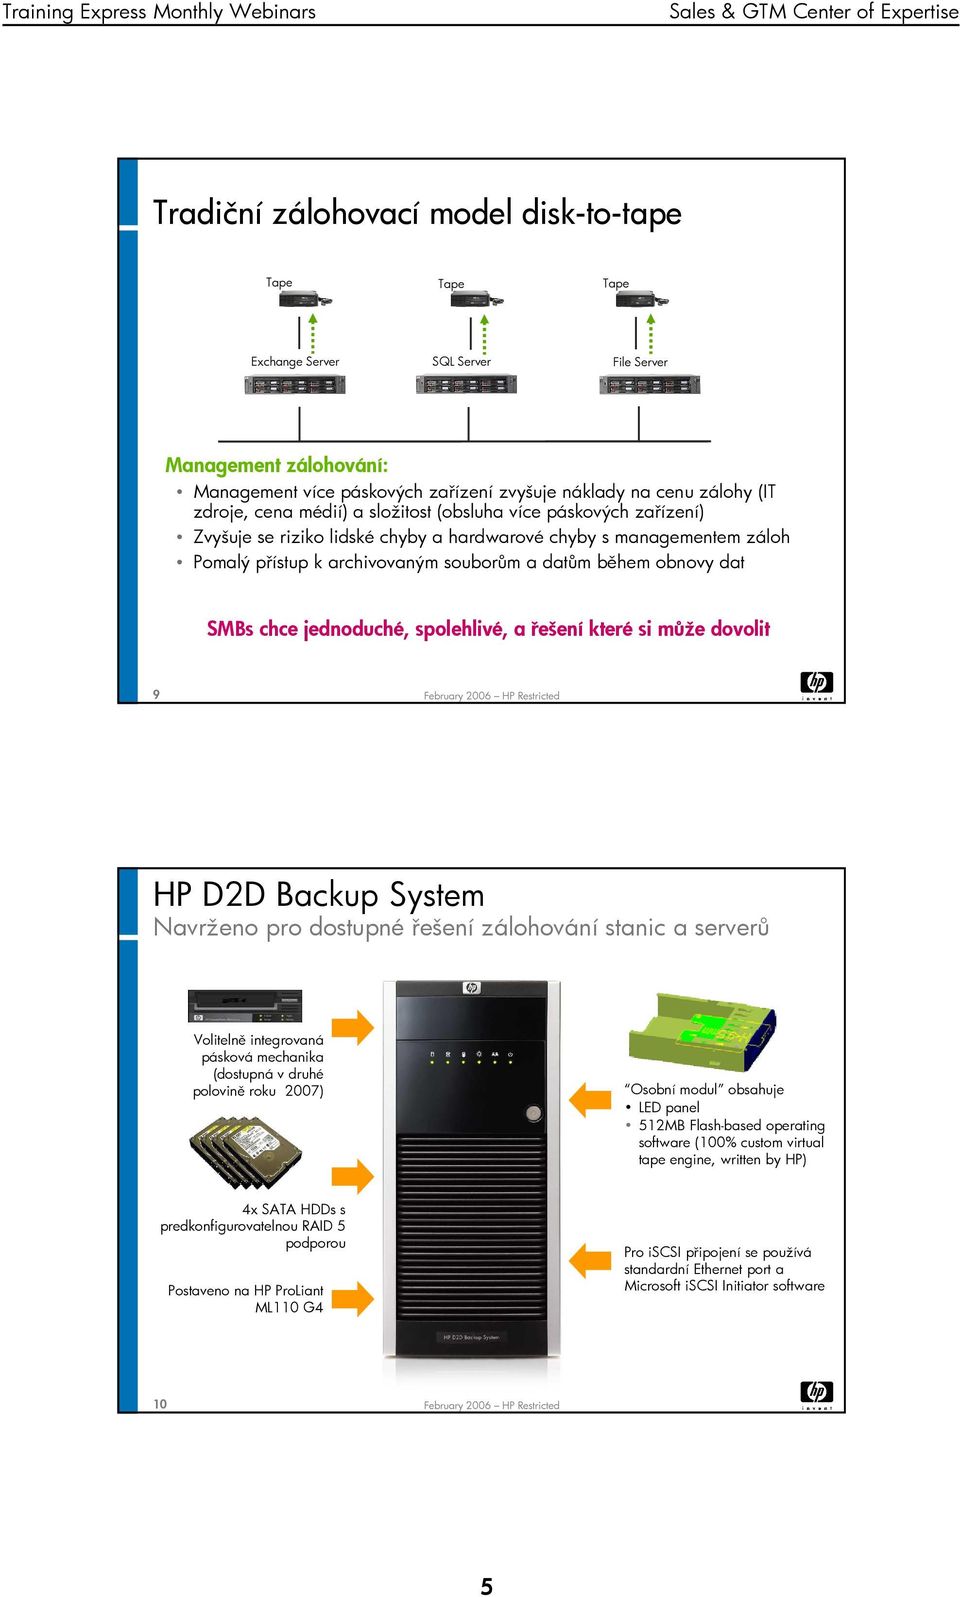 jednoduché, spolehlivé, a řešení které si může dovolit 9 HP D2D Backup System Navrženo pro dostupné řešení zálohování stanic a serverů Volitelně integrovaná pásková mechanika (dostupná v druhé